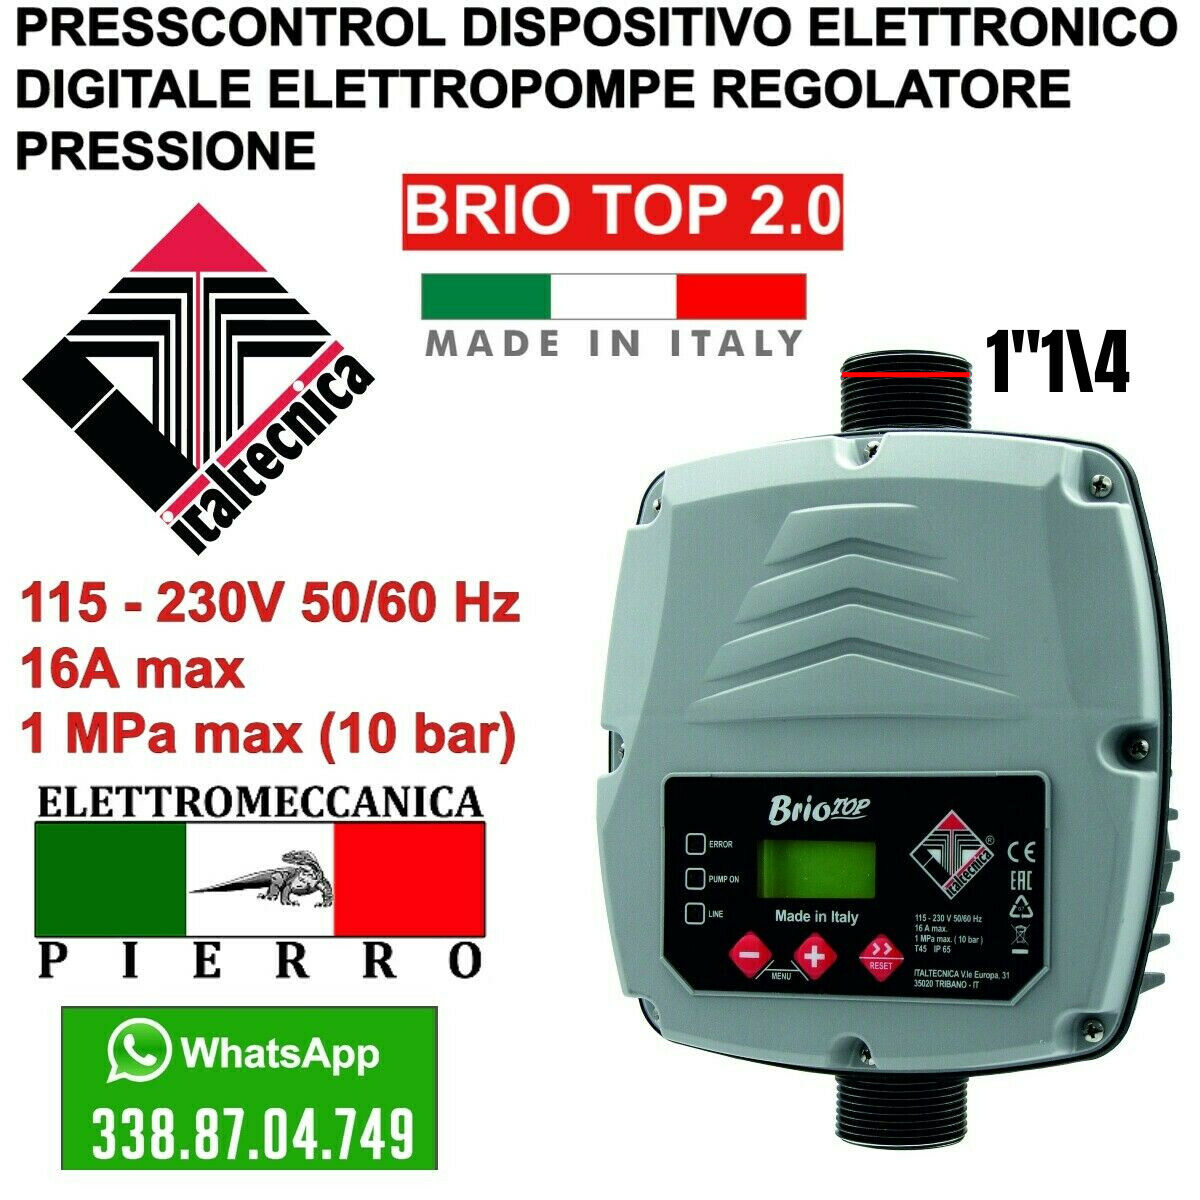 Smart PRESSCONTROL Brio Top 2.0 Logo Italtecnica Elettromeccanica Pierro assistenza